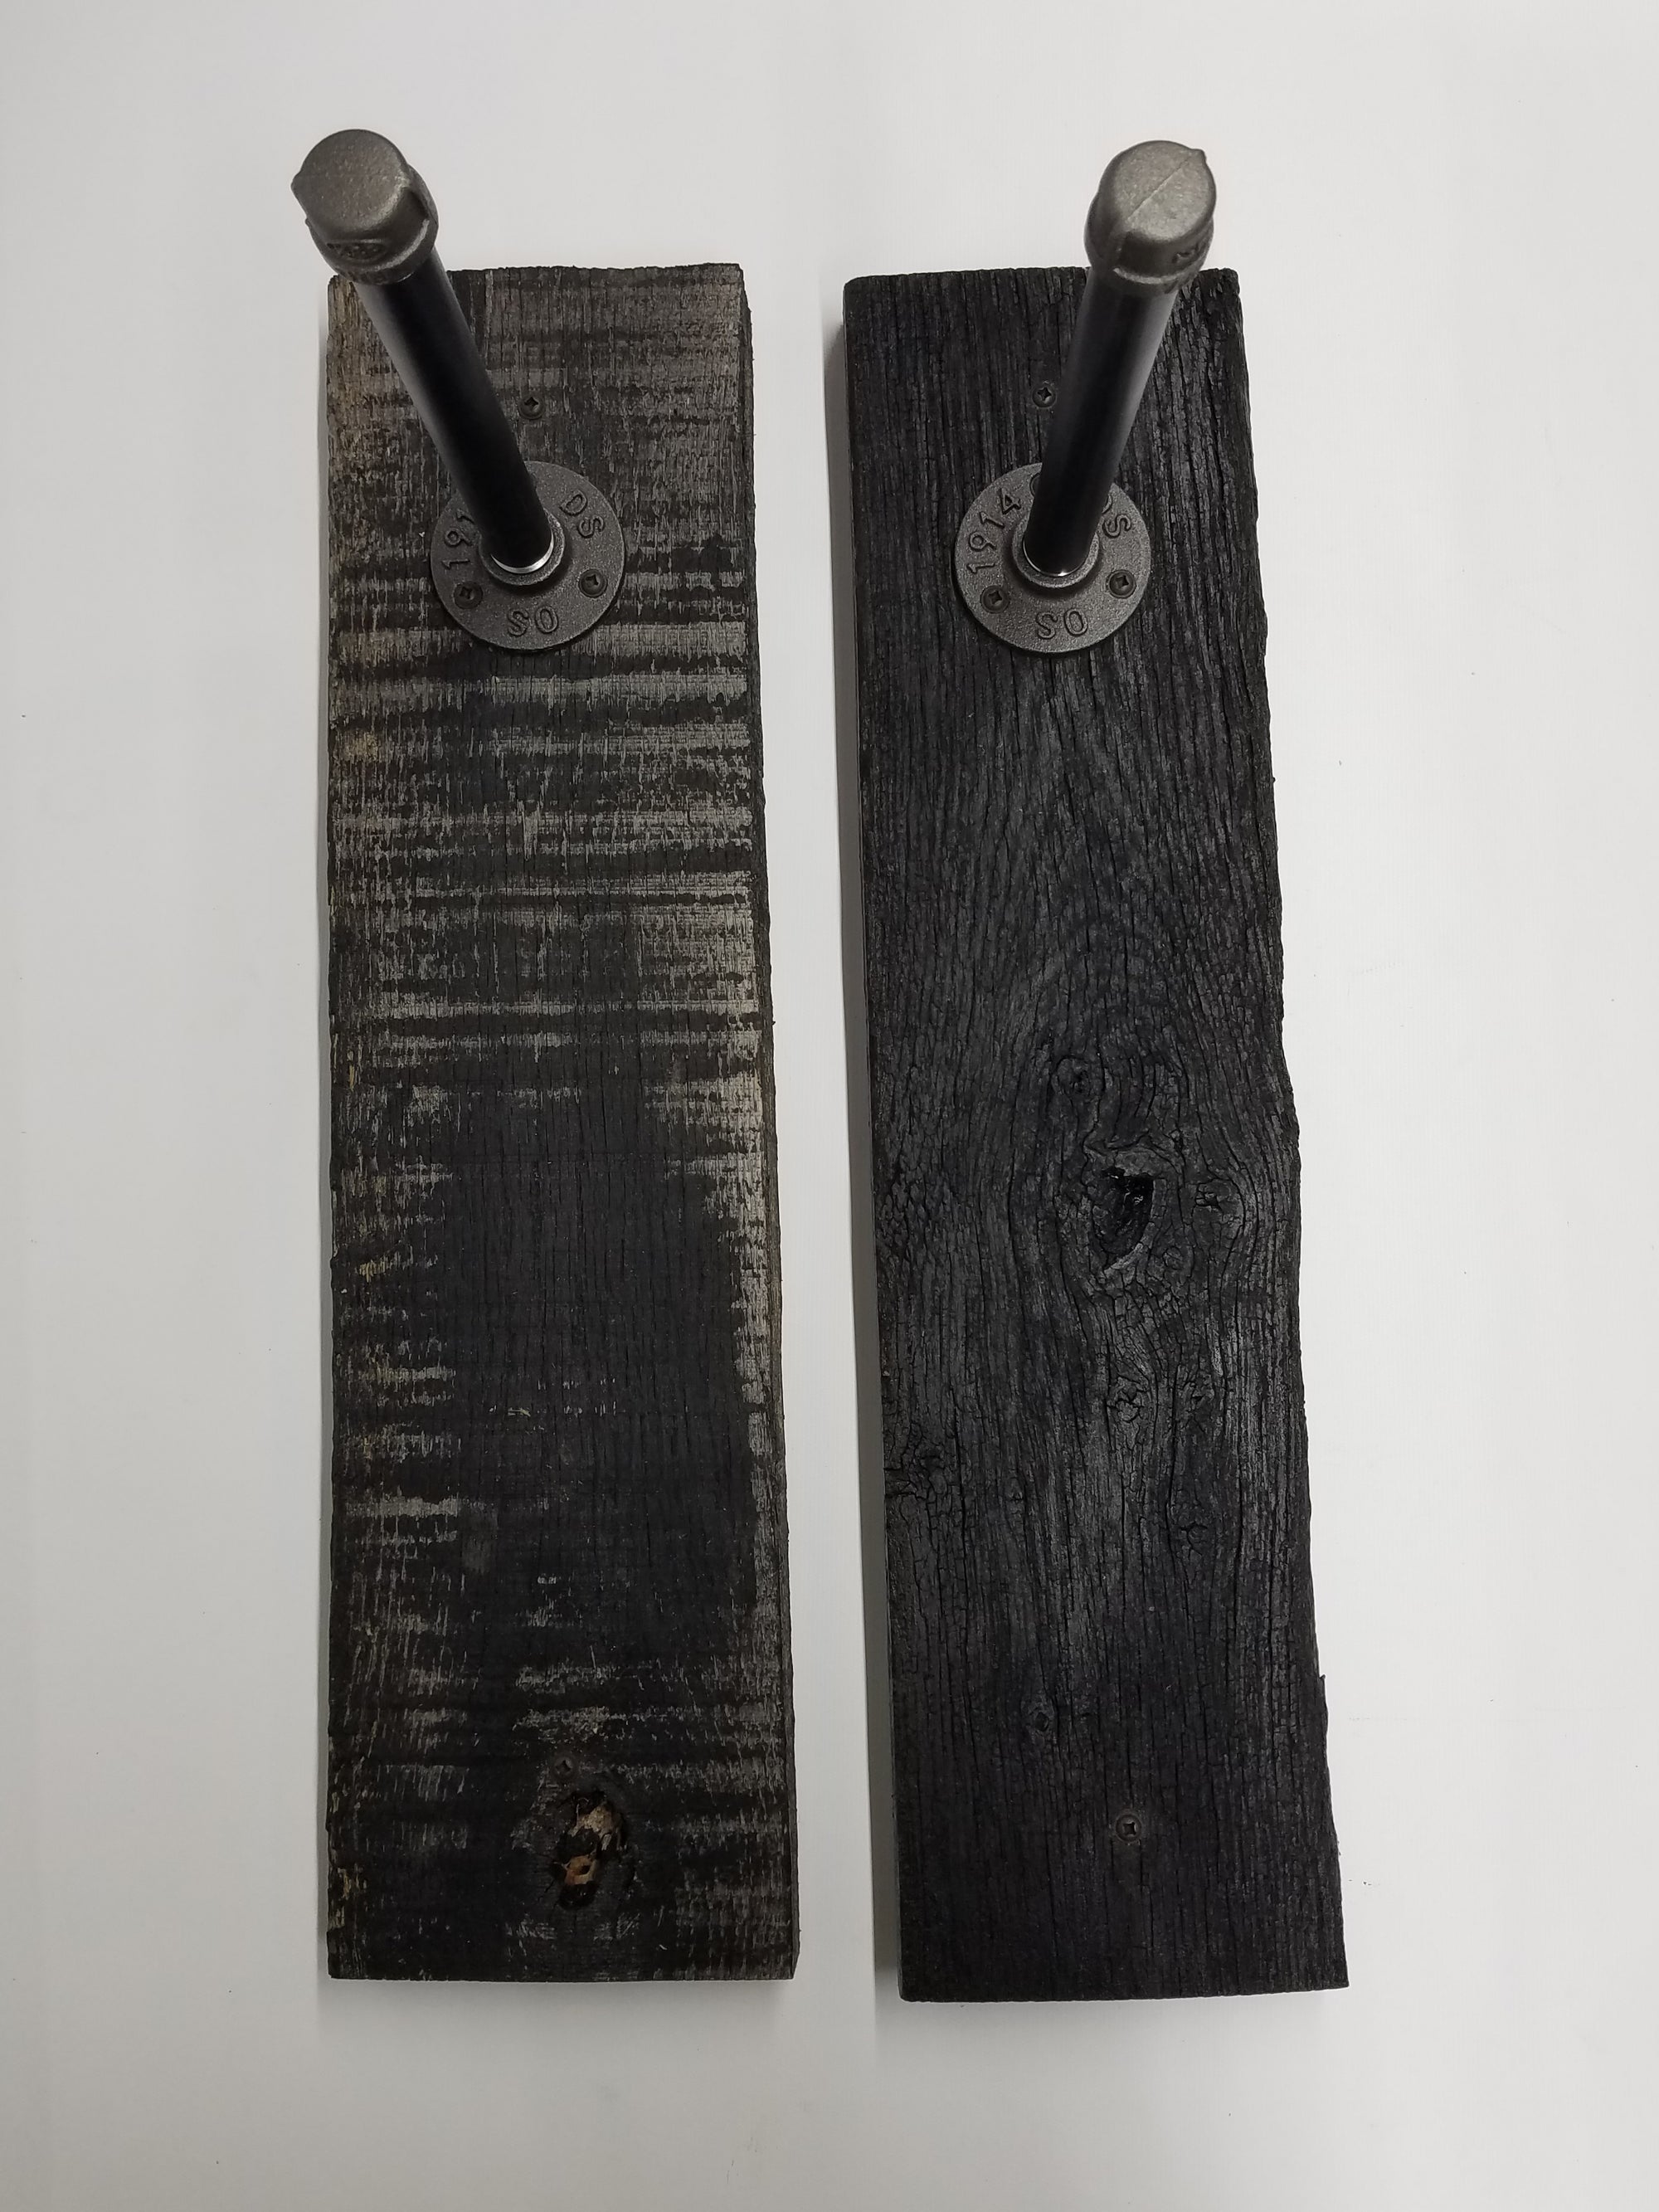 Rustic Dark Wood Hangers Featuring Black Hook